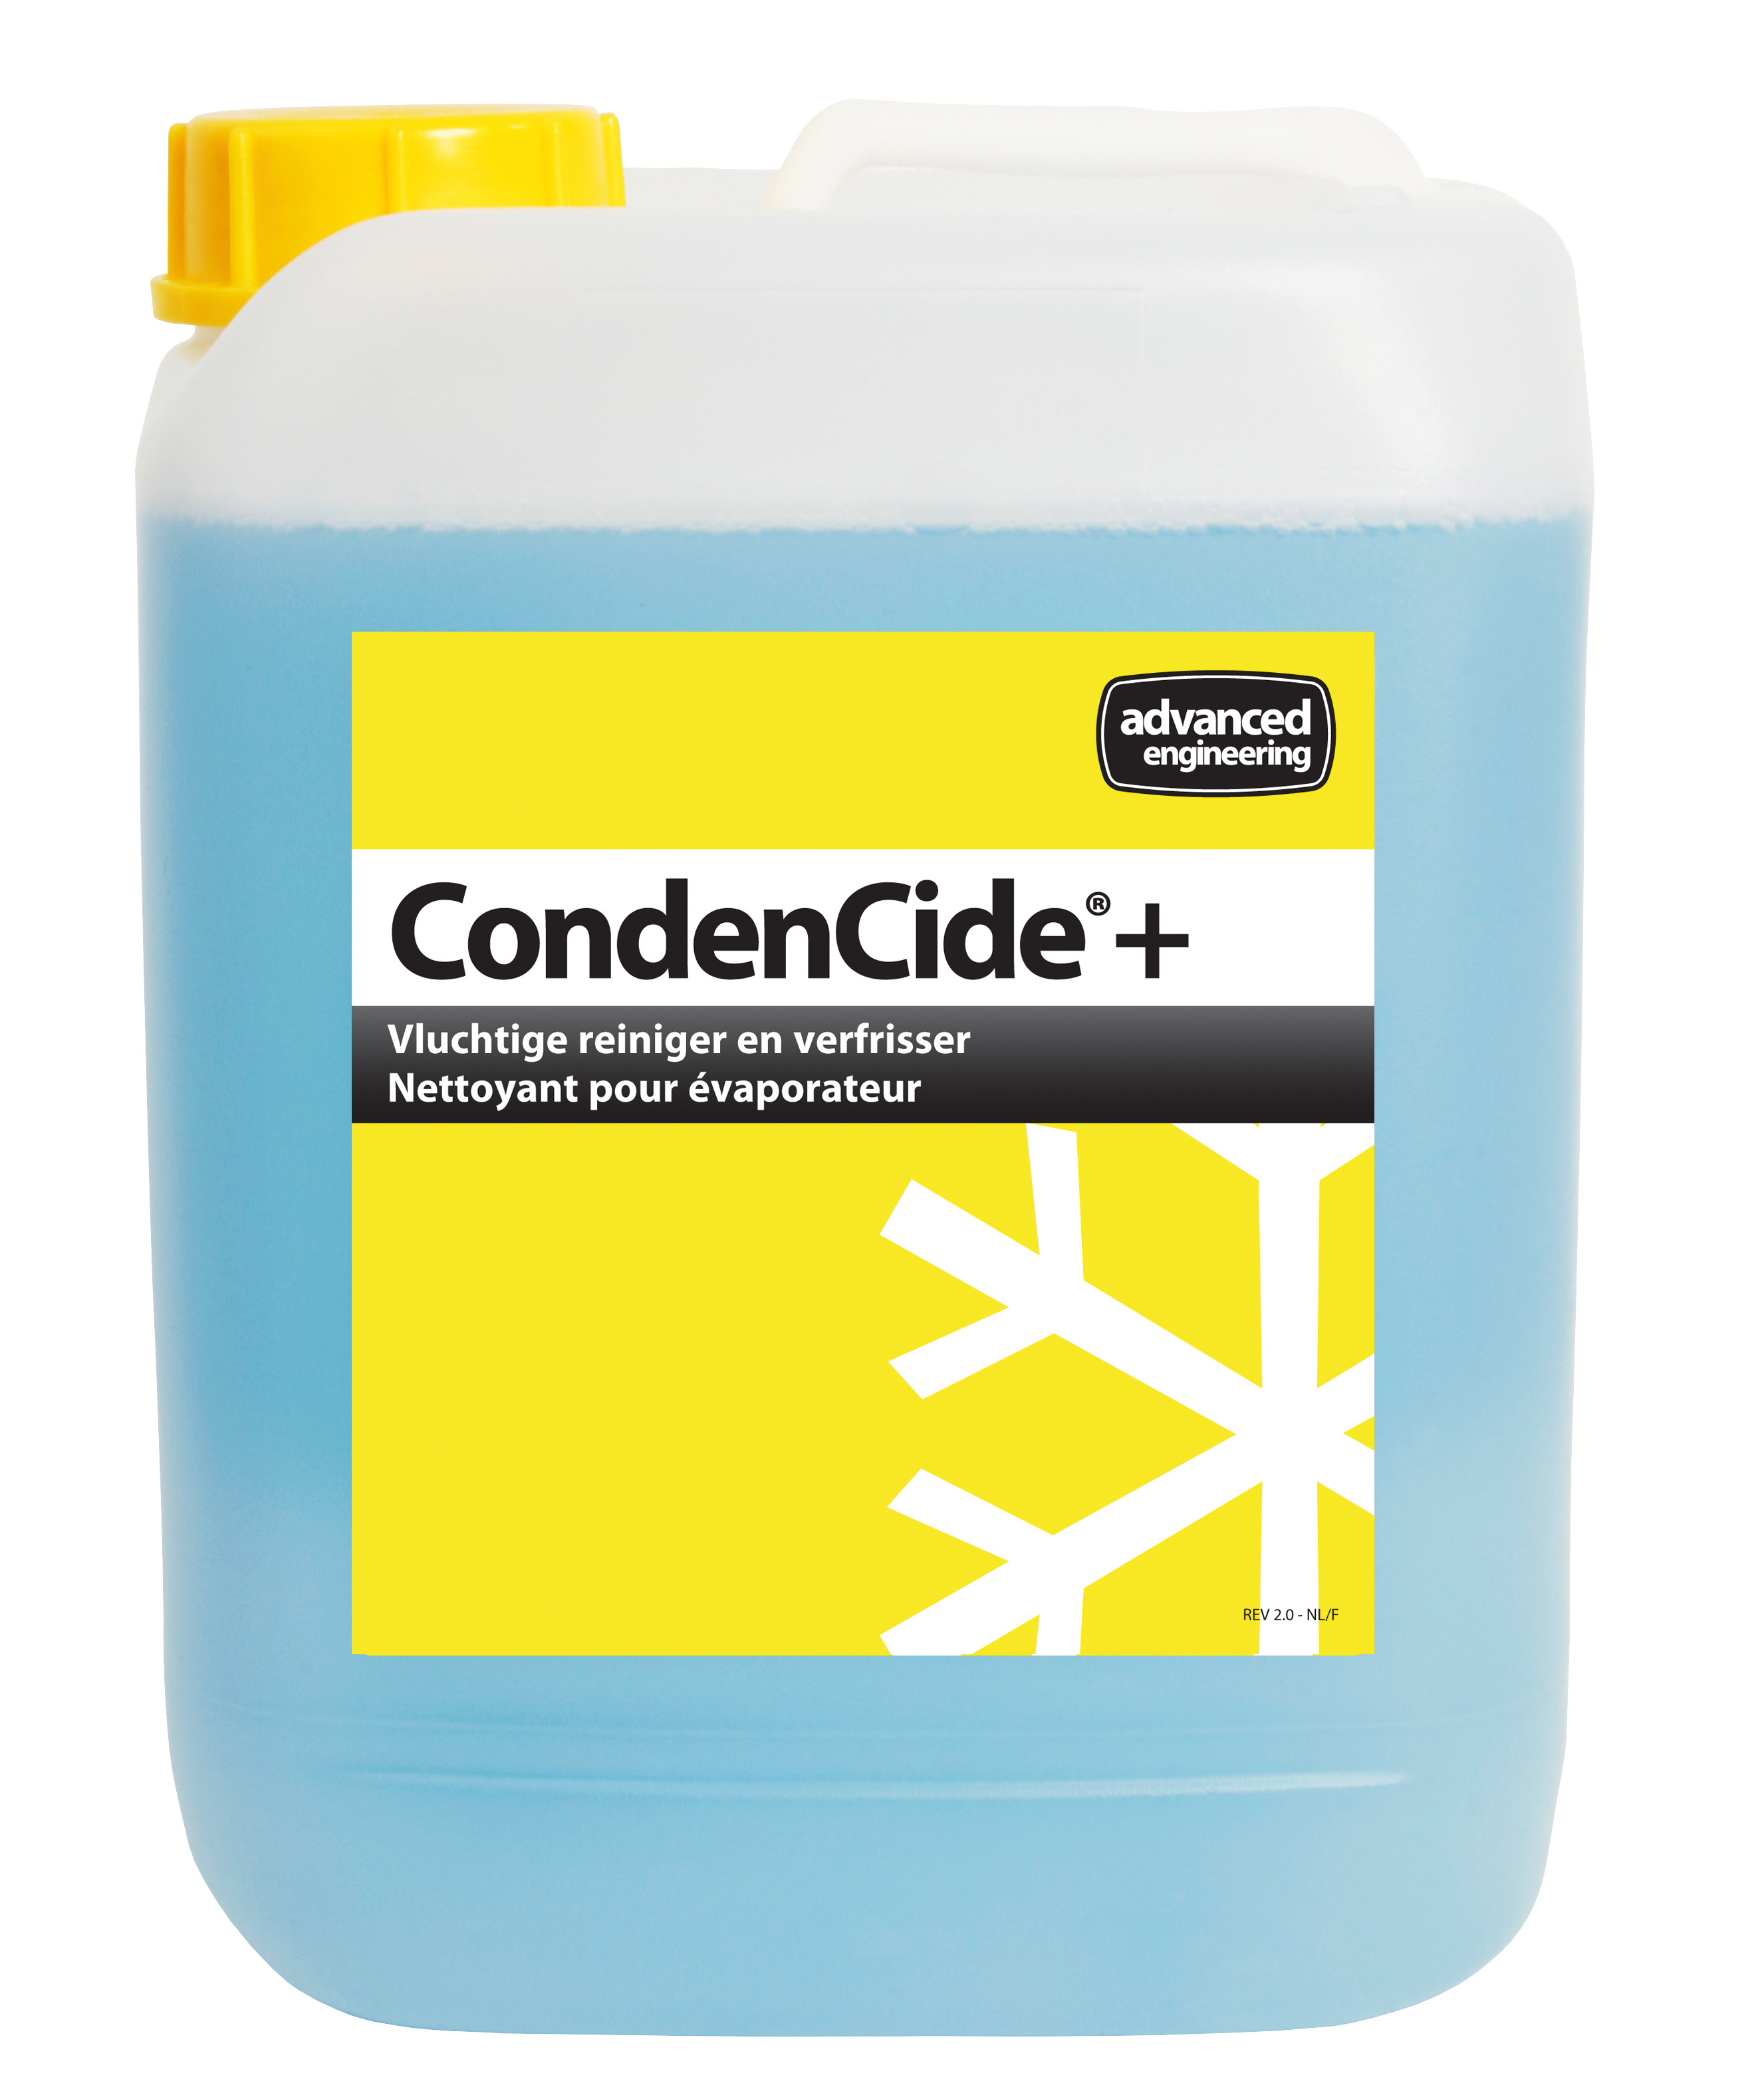 N814-2255 Condencide 5ltr fles verdamperreiniger desinfecterend